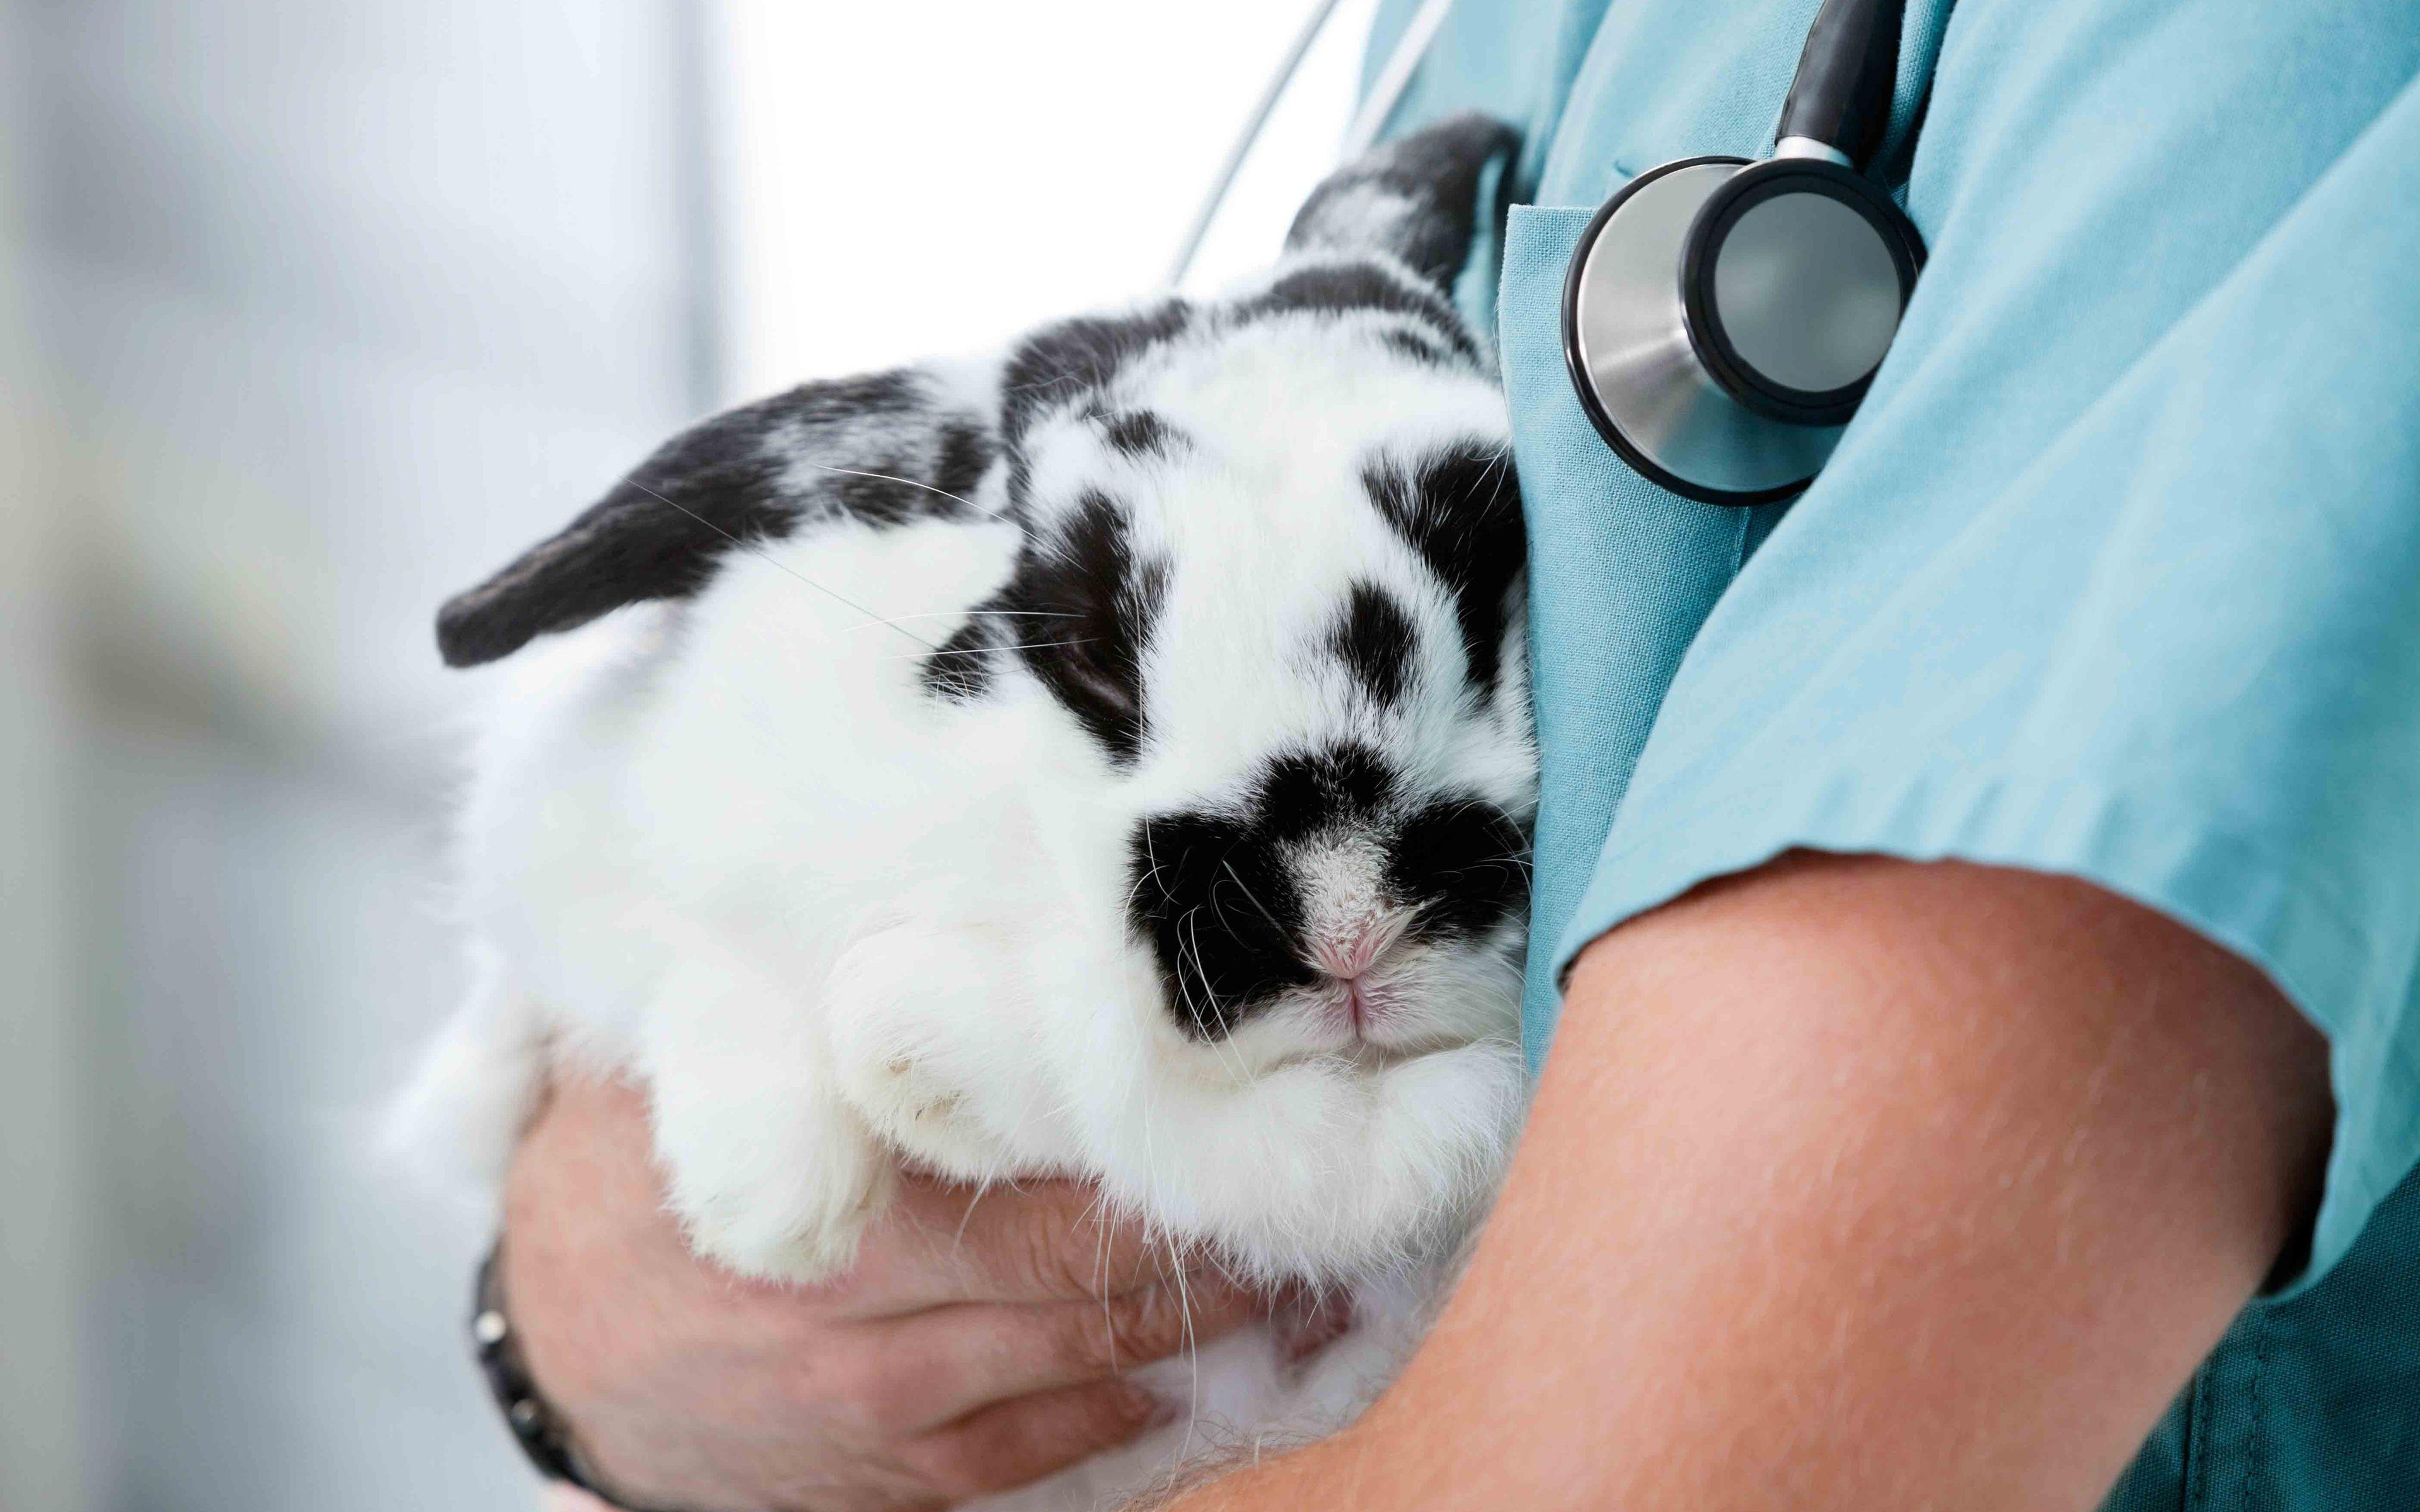 عکس تماشایی دامپزشک در حال درمان خرگوش با کیفیت عالی